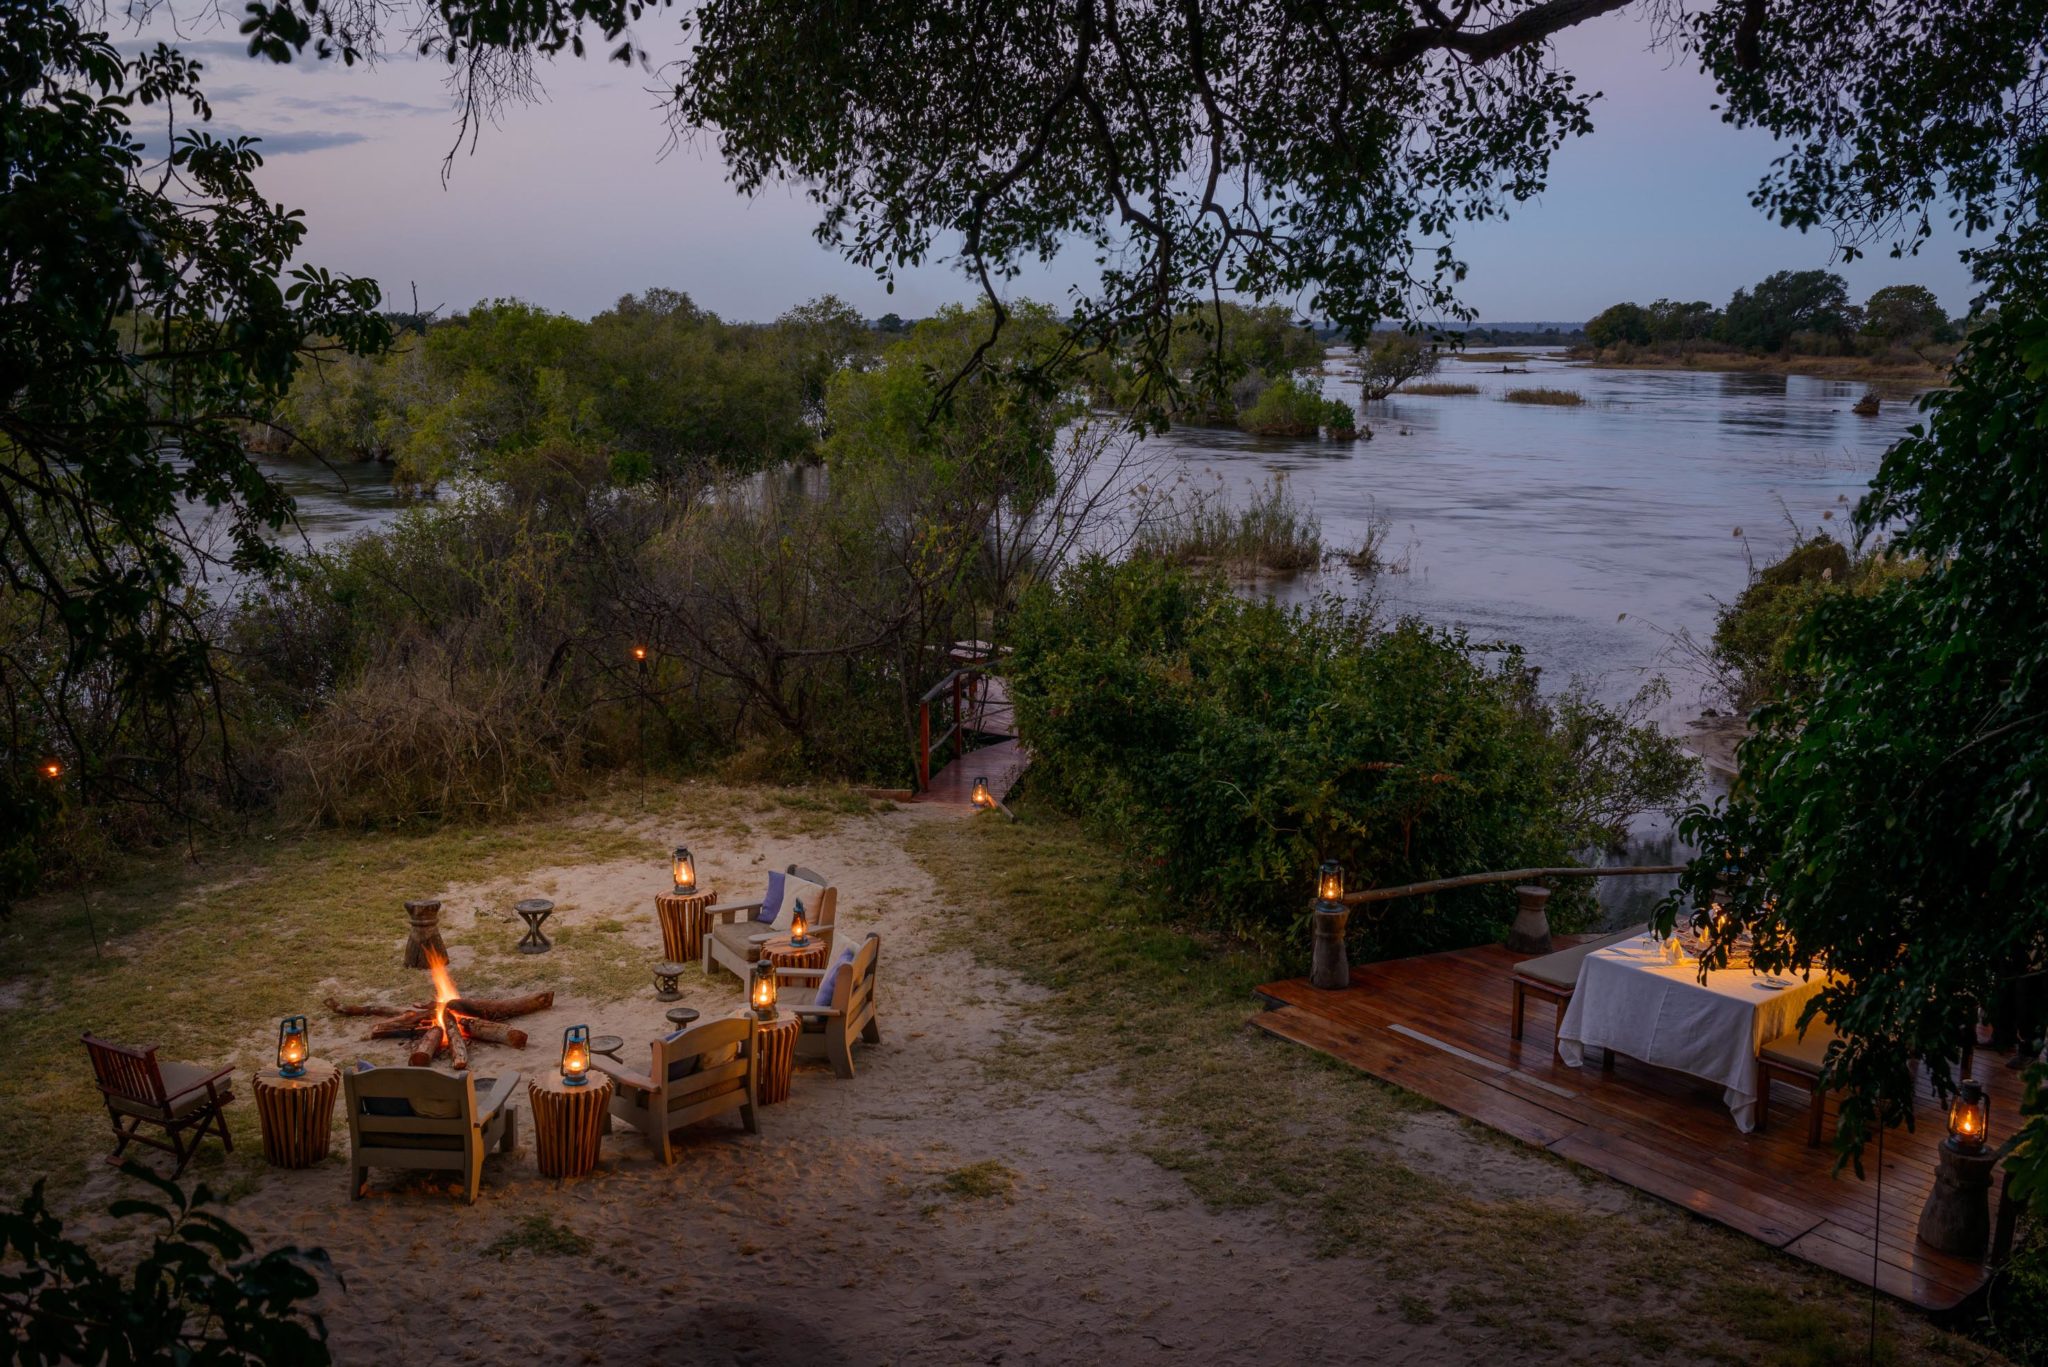 zambia livingstone sindabezi dinner setting on river